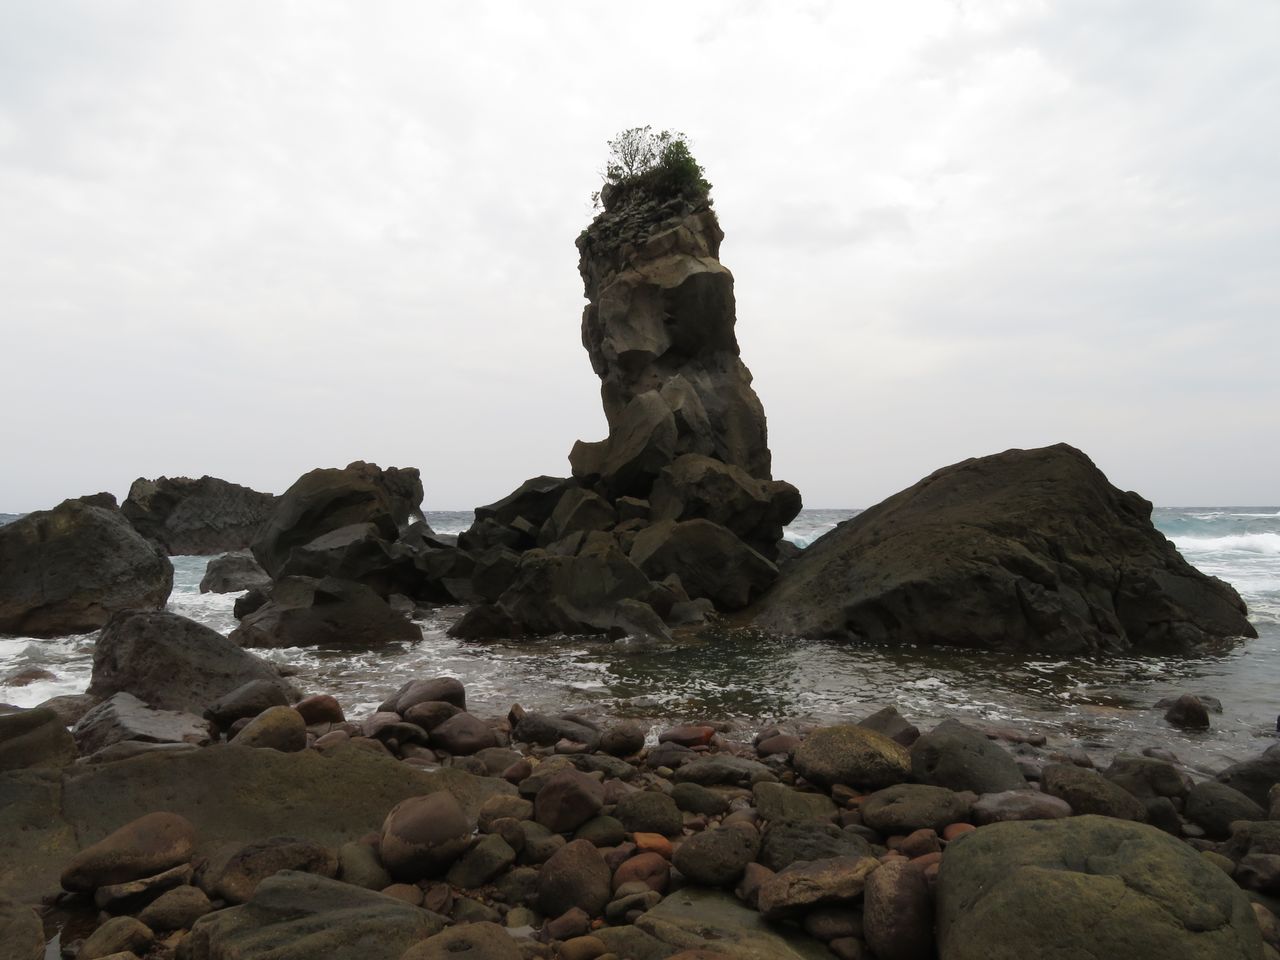 Les eaux thermales bouillonnent à la surface de la berge rocheuse de l’île Kuchinoshima (Pixta)